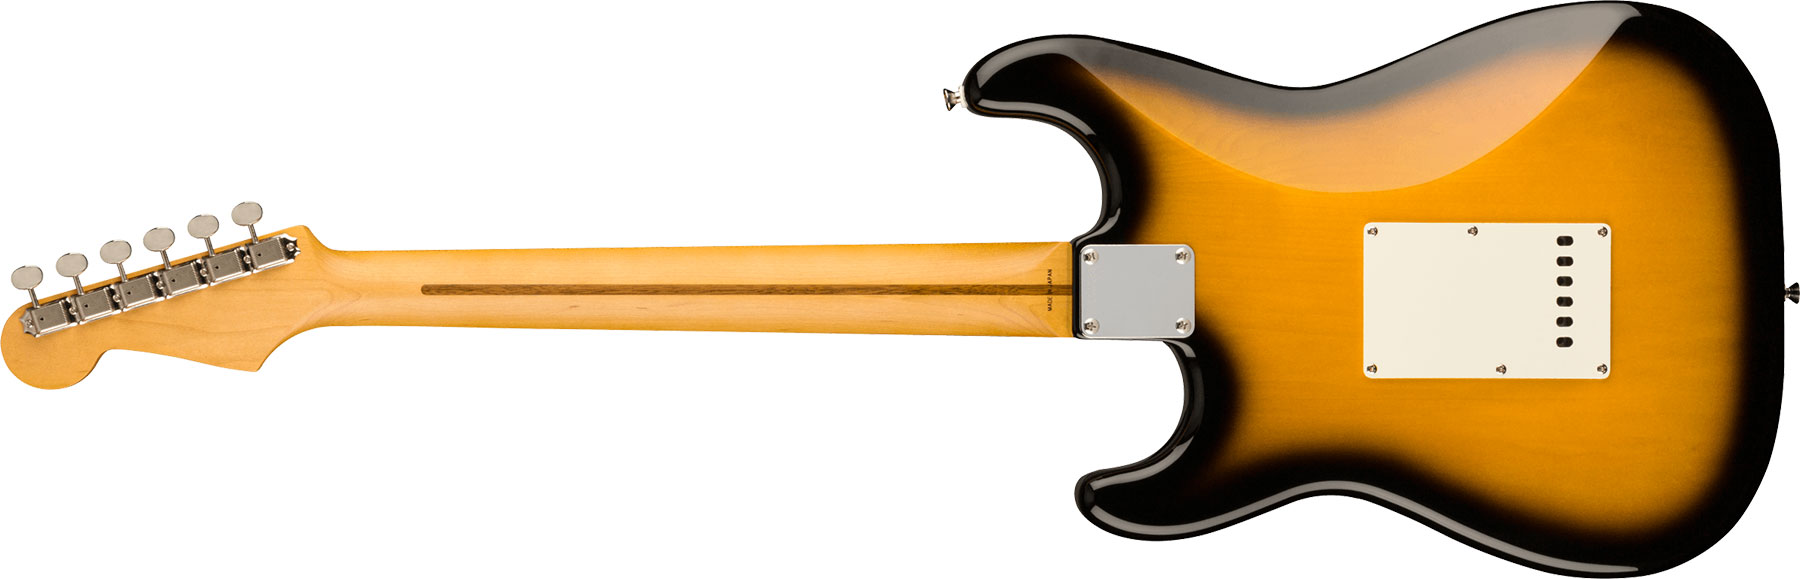 Fender Strat Jv Modified '50s Jap Hss Trem Mn - 2-color Sunburst - Elektrische gitaar in Str-vorm - Variation 1